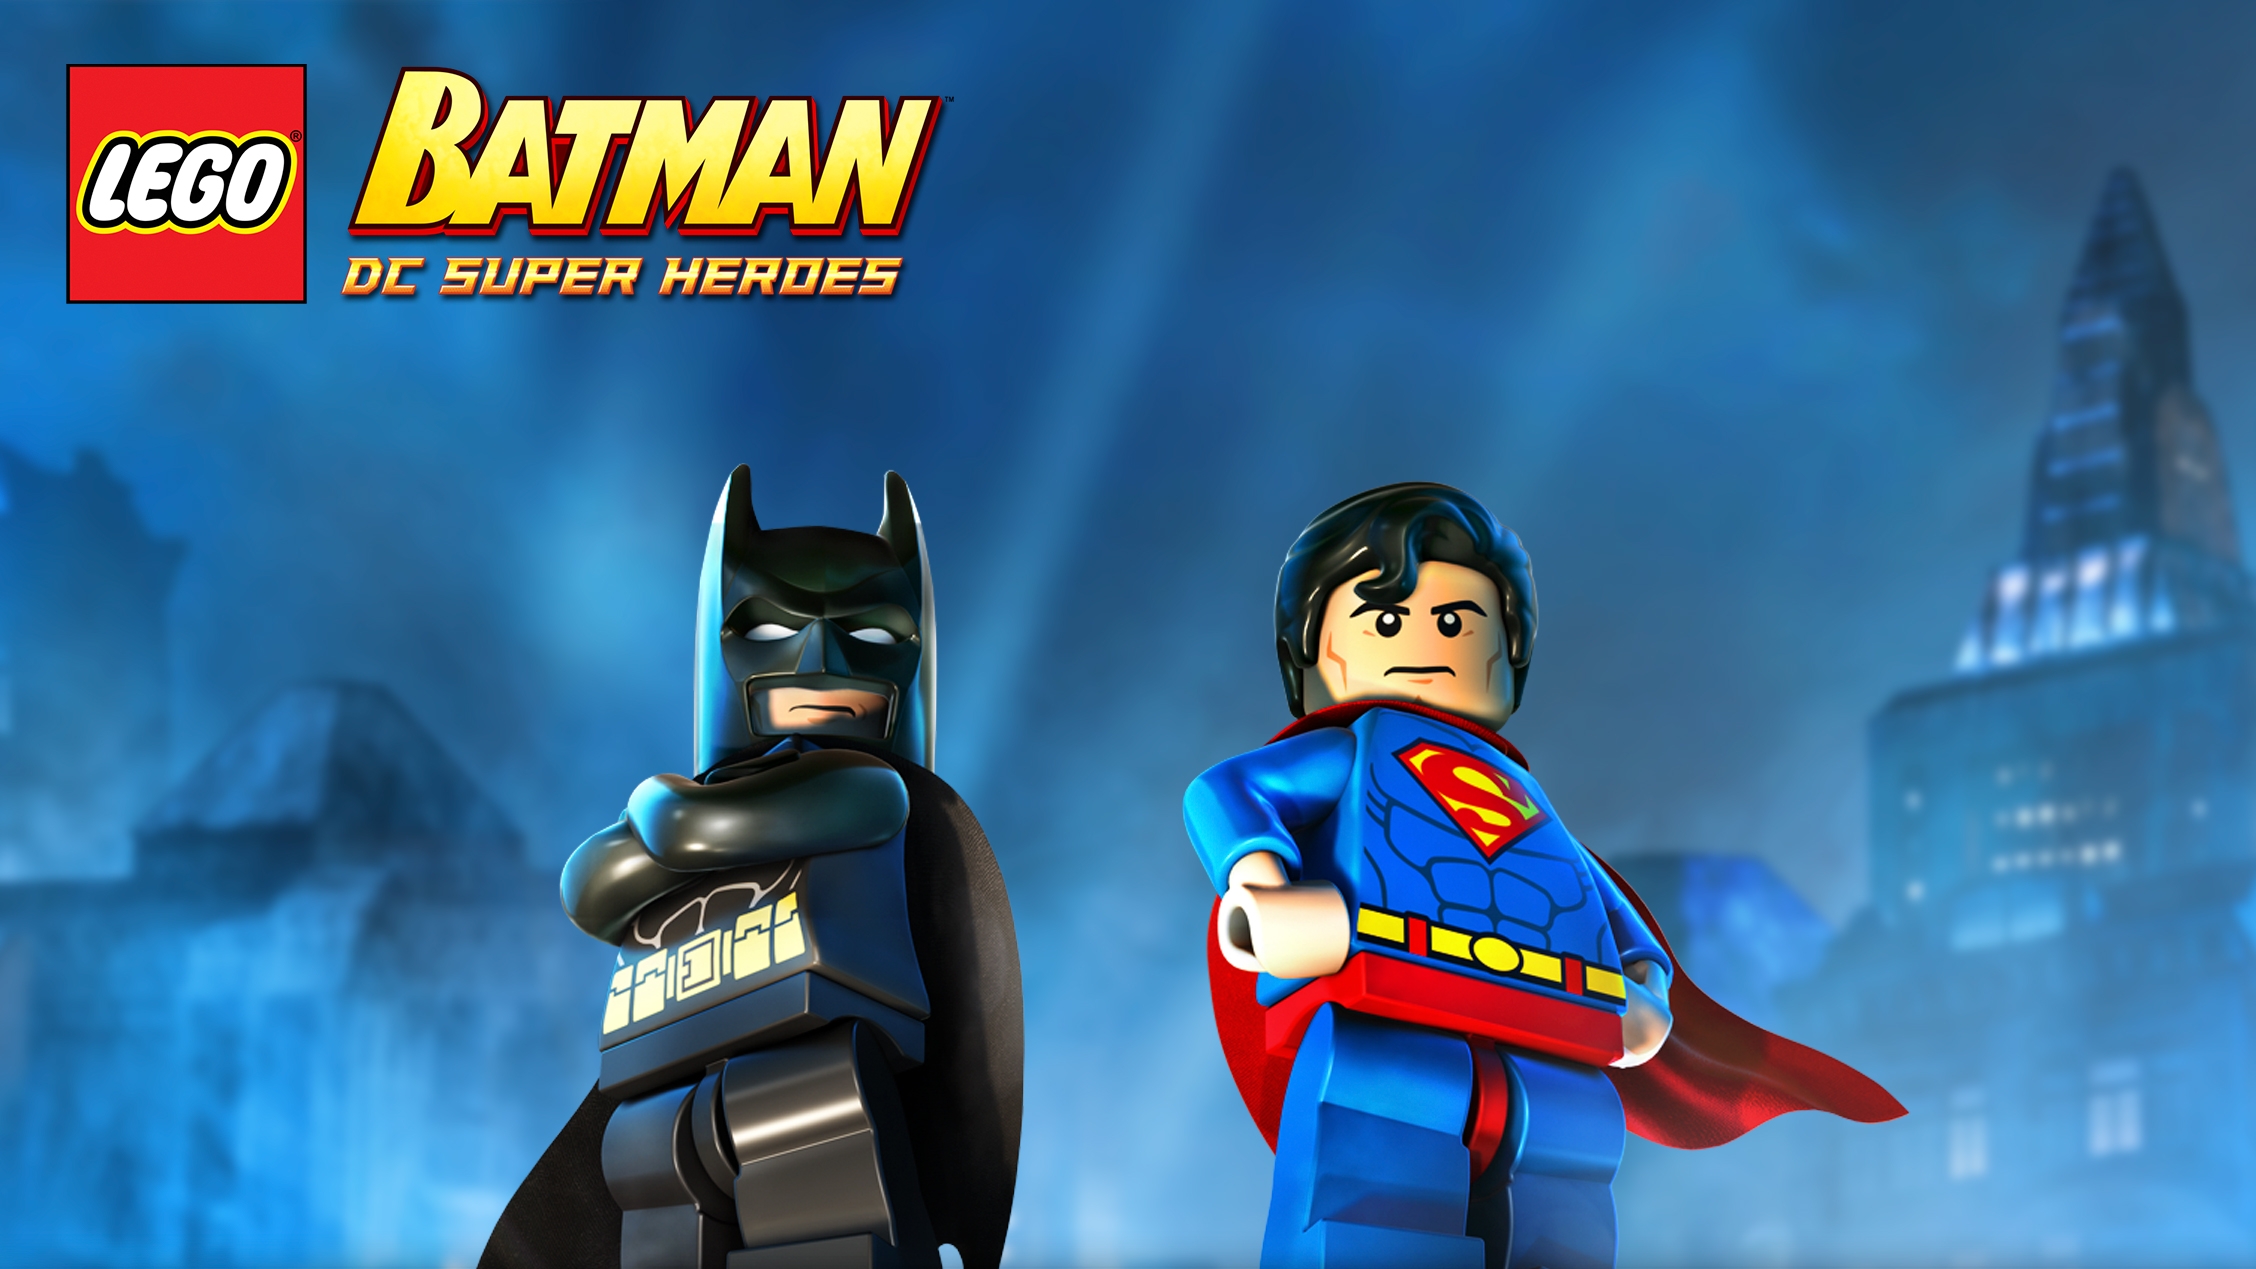 Lego Batman Dc Super Heroes Games Lego Com For Kids Us - roblox lego batman games